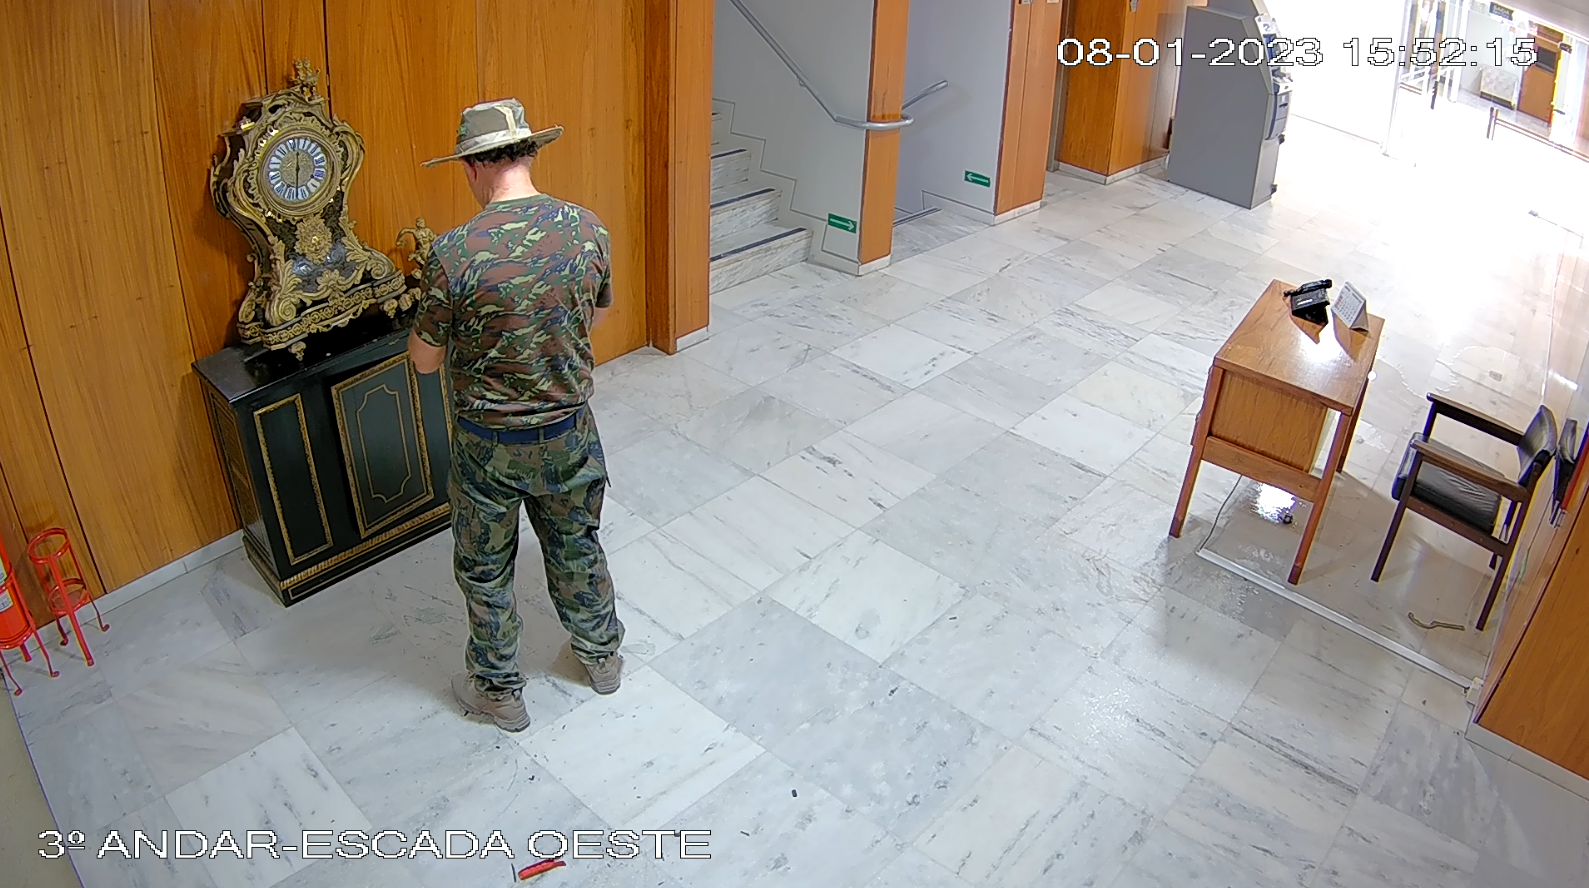 Imagens das câmeras de segurança do Palácio do Planalto mostram que cena compartilhada nas redes foi registrada às 15h52